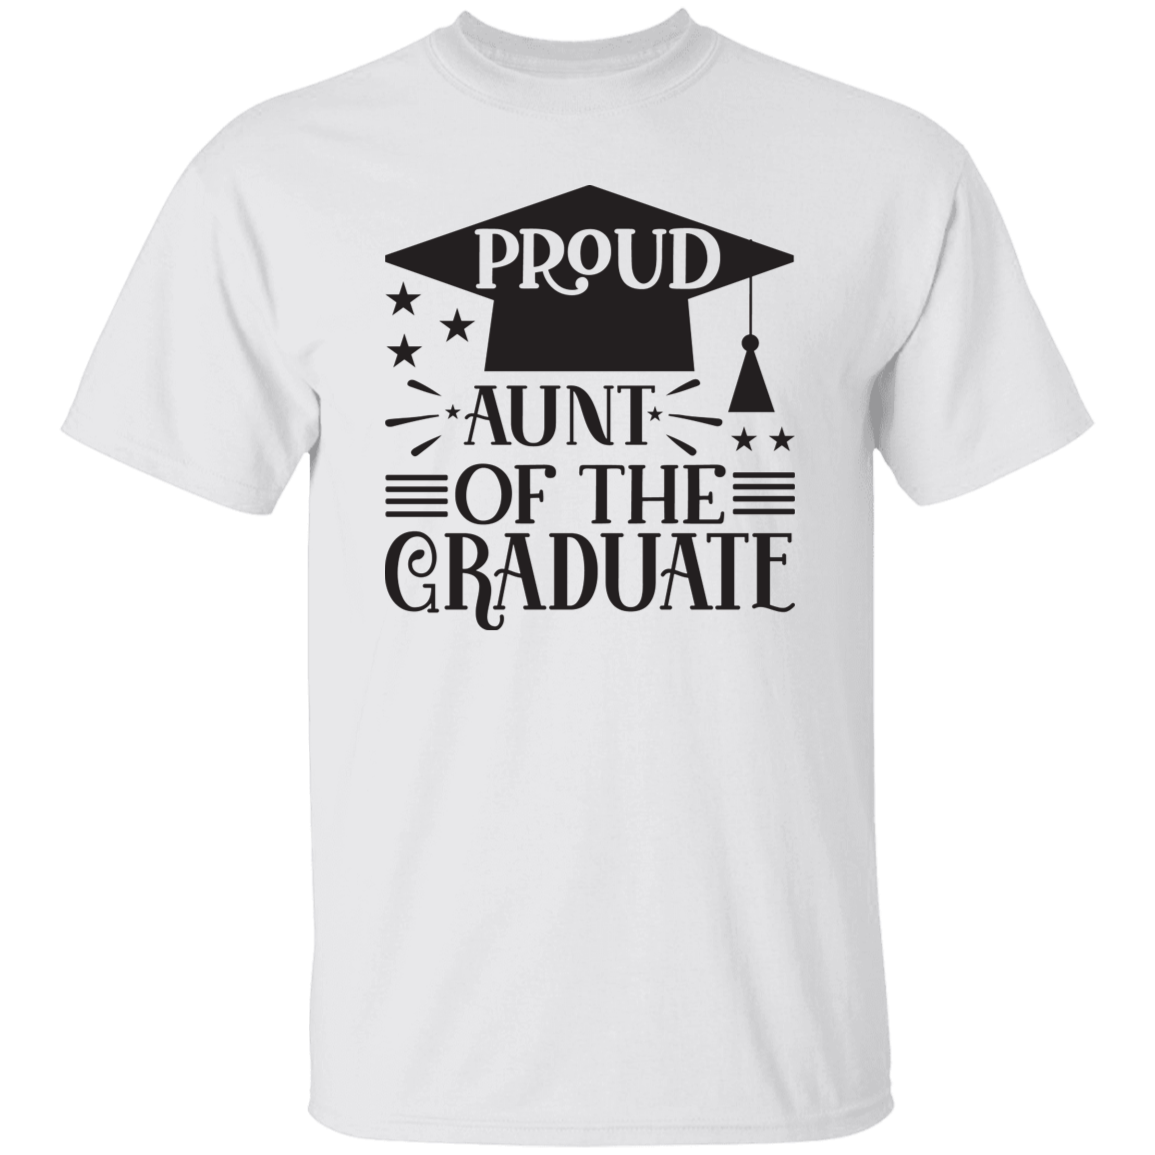 Proud Aunt of the Graduate G500 5.3 oz. T-Shirt